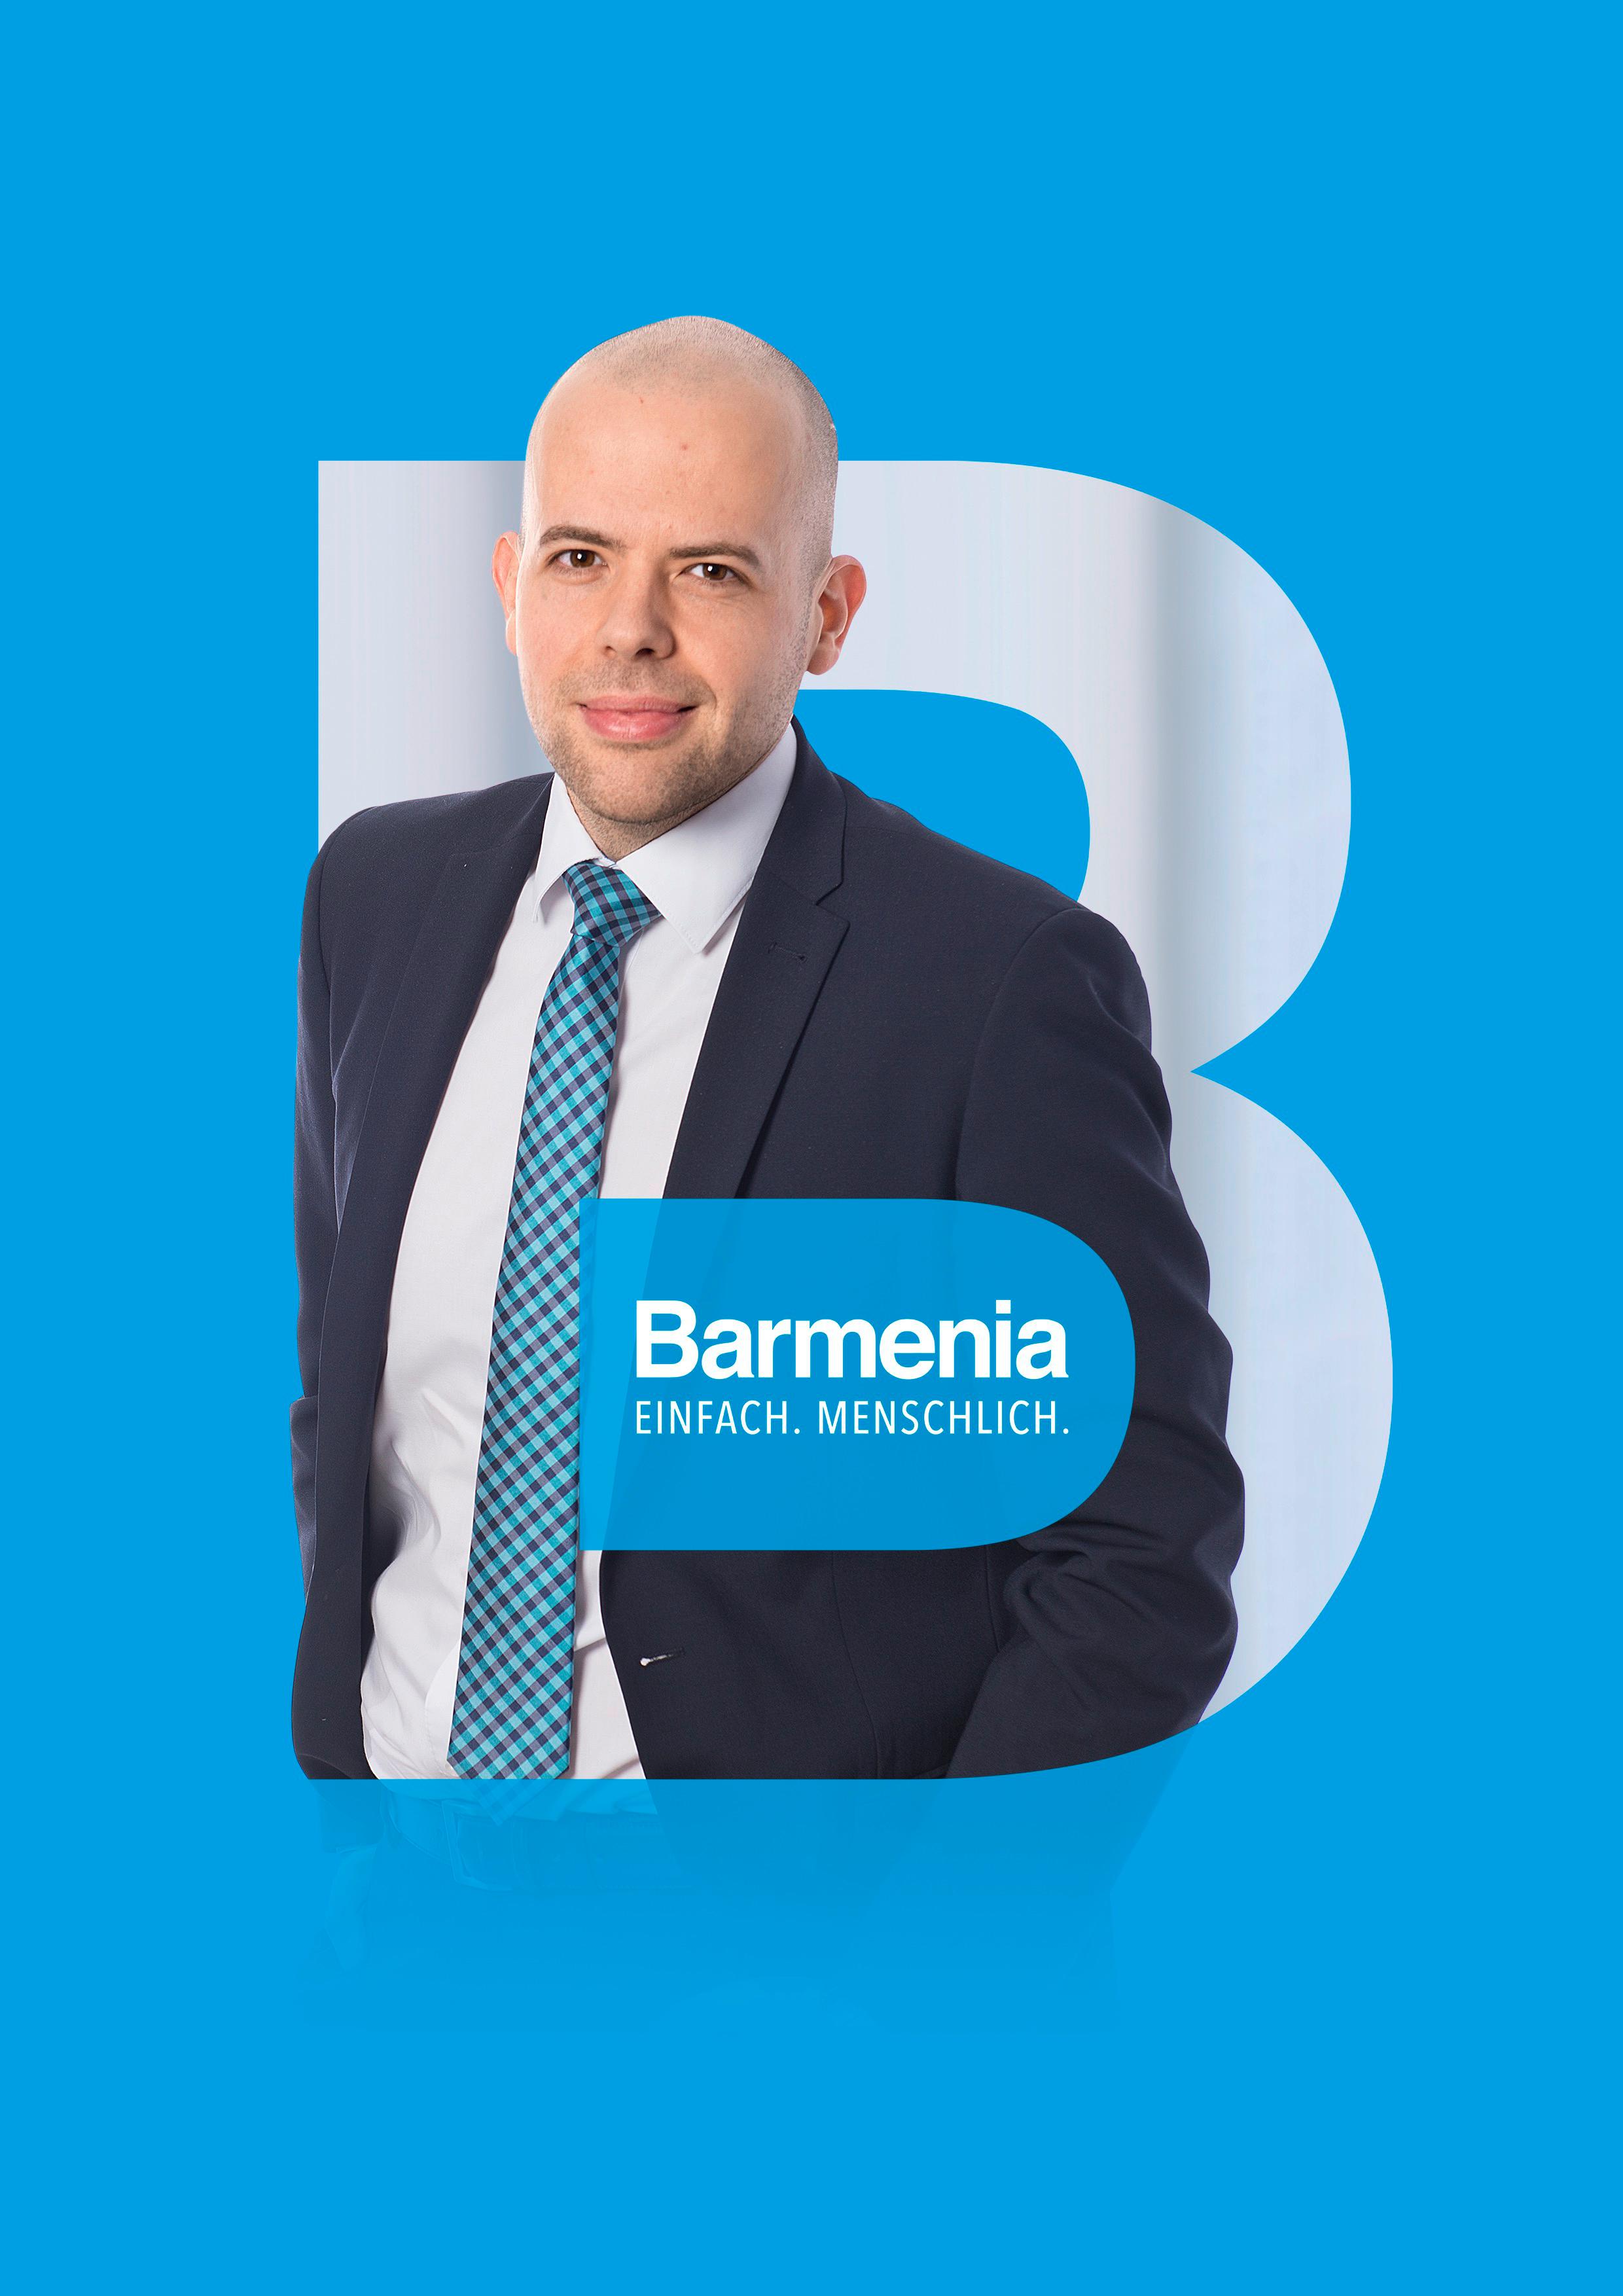 Raban EsserIhr Ansprechpartner für die Barmenia Versicherung in Tülau, Brome, Wolfsburg, Gifhorn, Braunschweig und Salzgitter